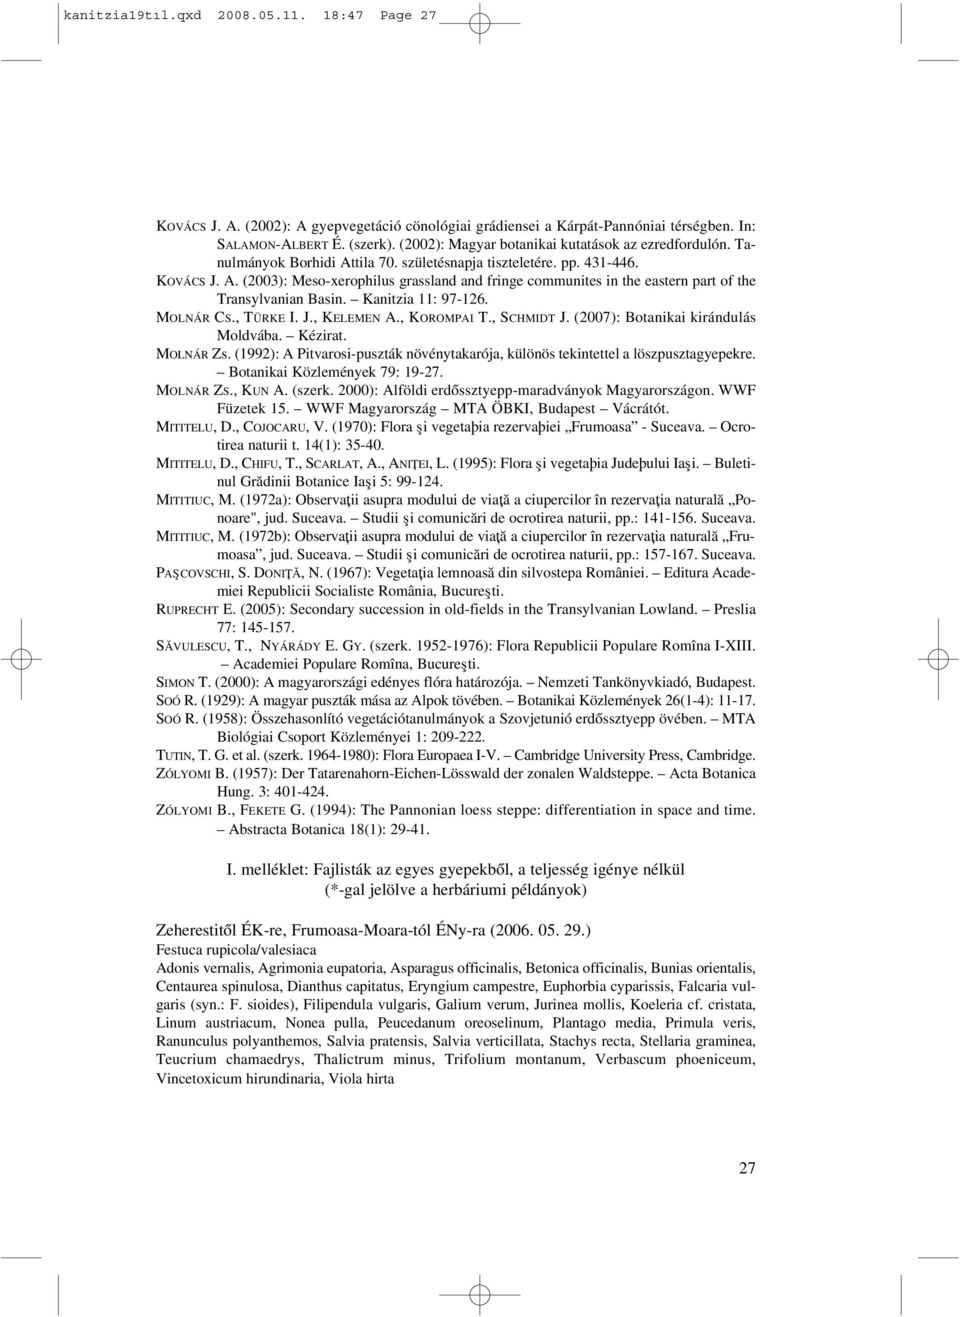 Kanitzia 11: 97-126. MOLNÁR CS., TÜRKE I. J., KELEMEN A., KOROMPAI T., SCHMIDT J. (2007): Botanikai kirándulás Moldvába. Kézirat. MOLNÁR Zs.